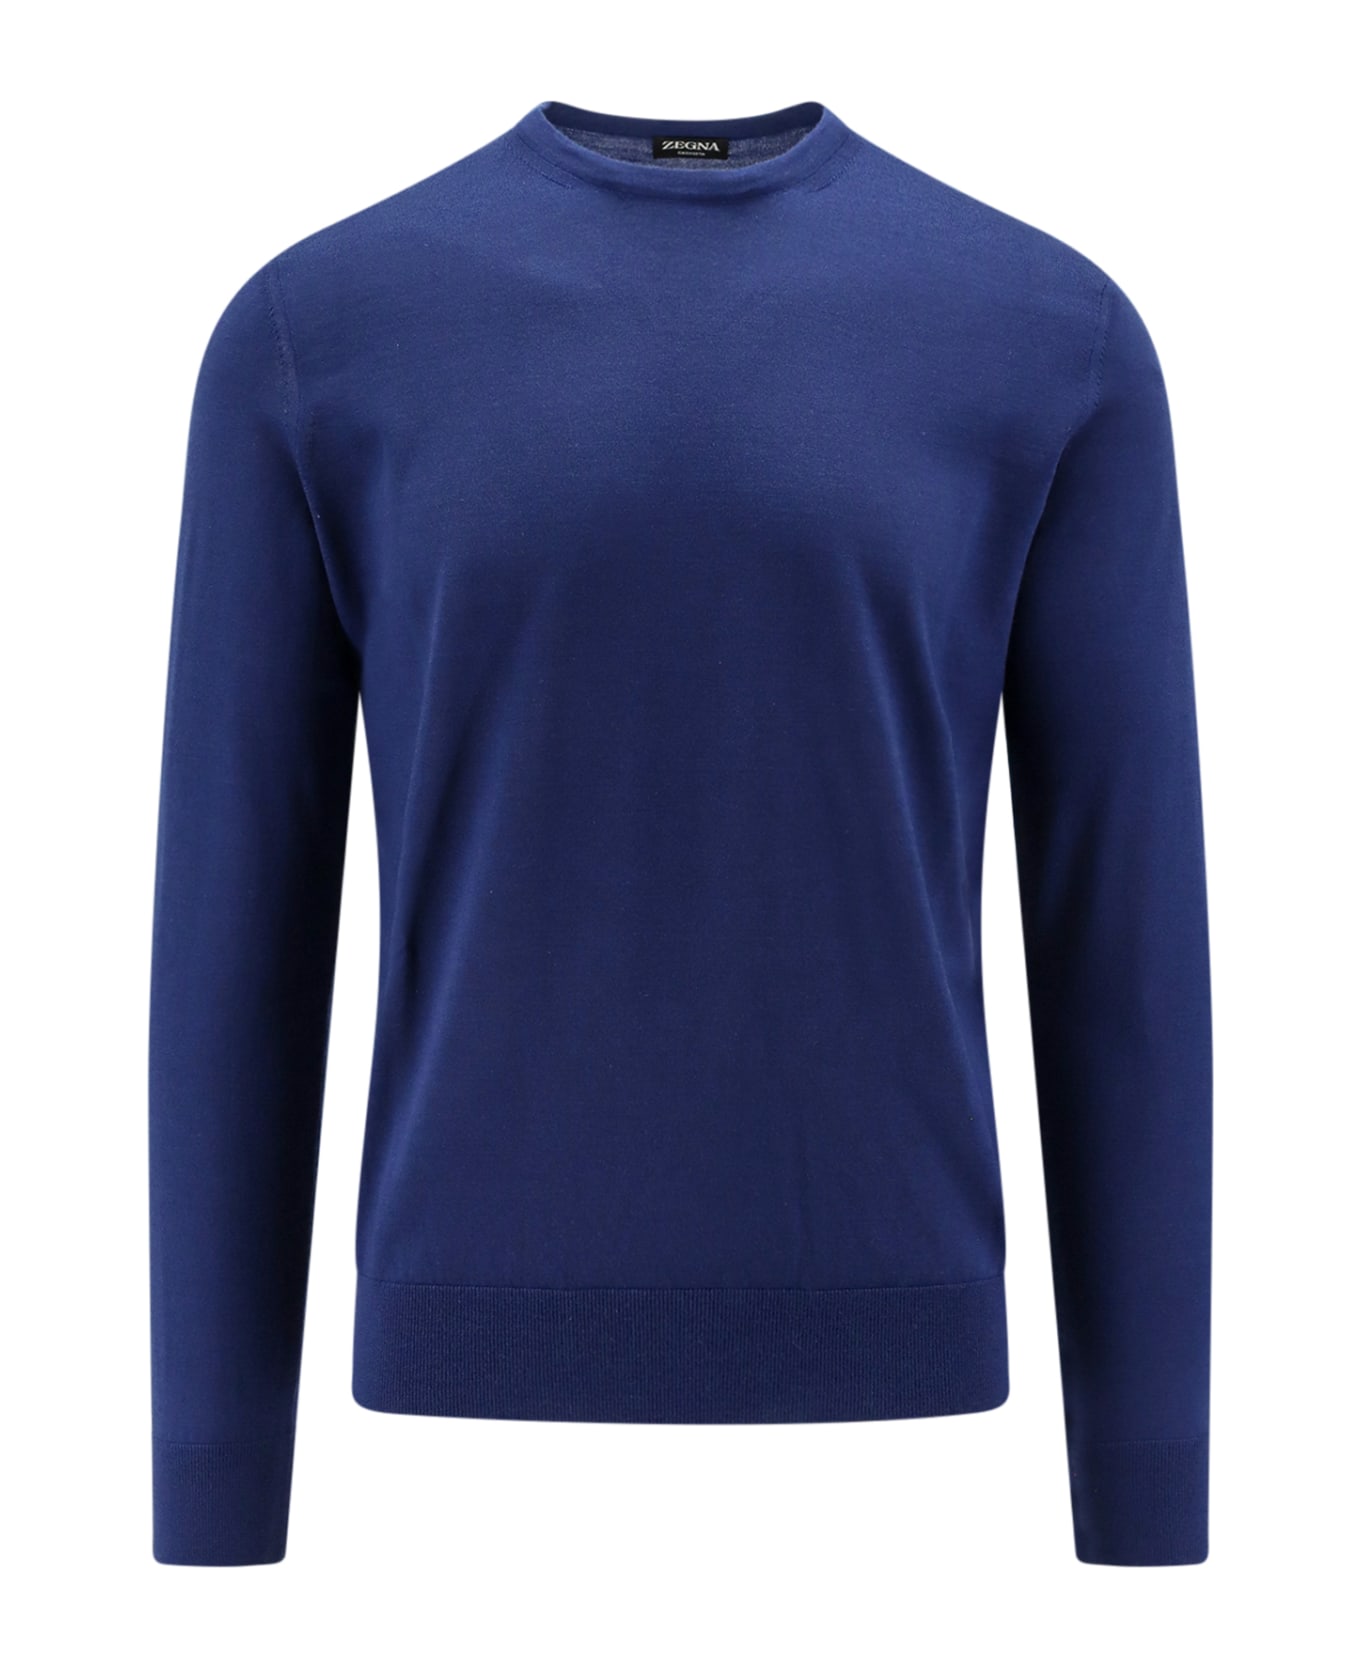 Zegna Sweater - Blue ニットウェア